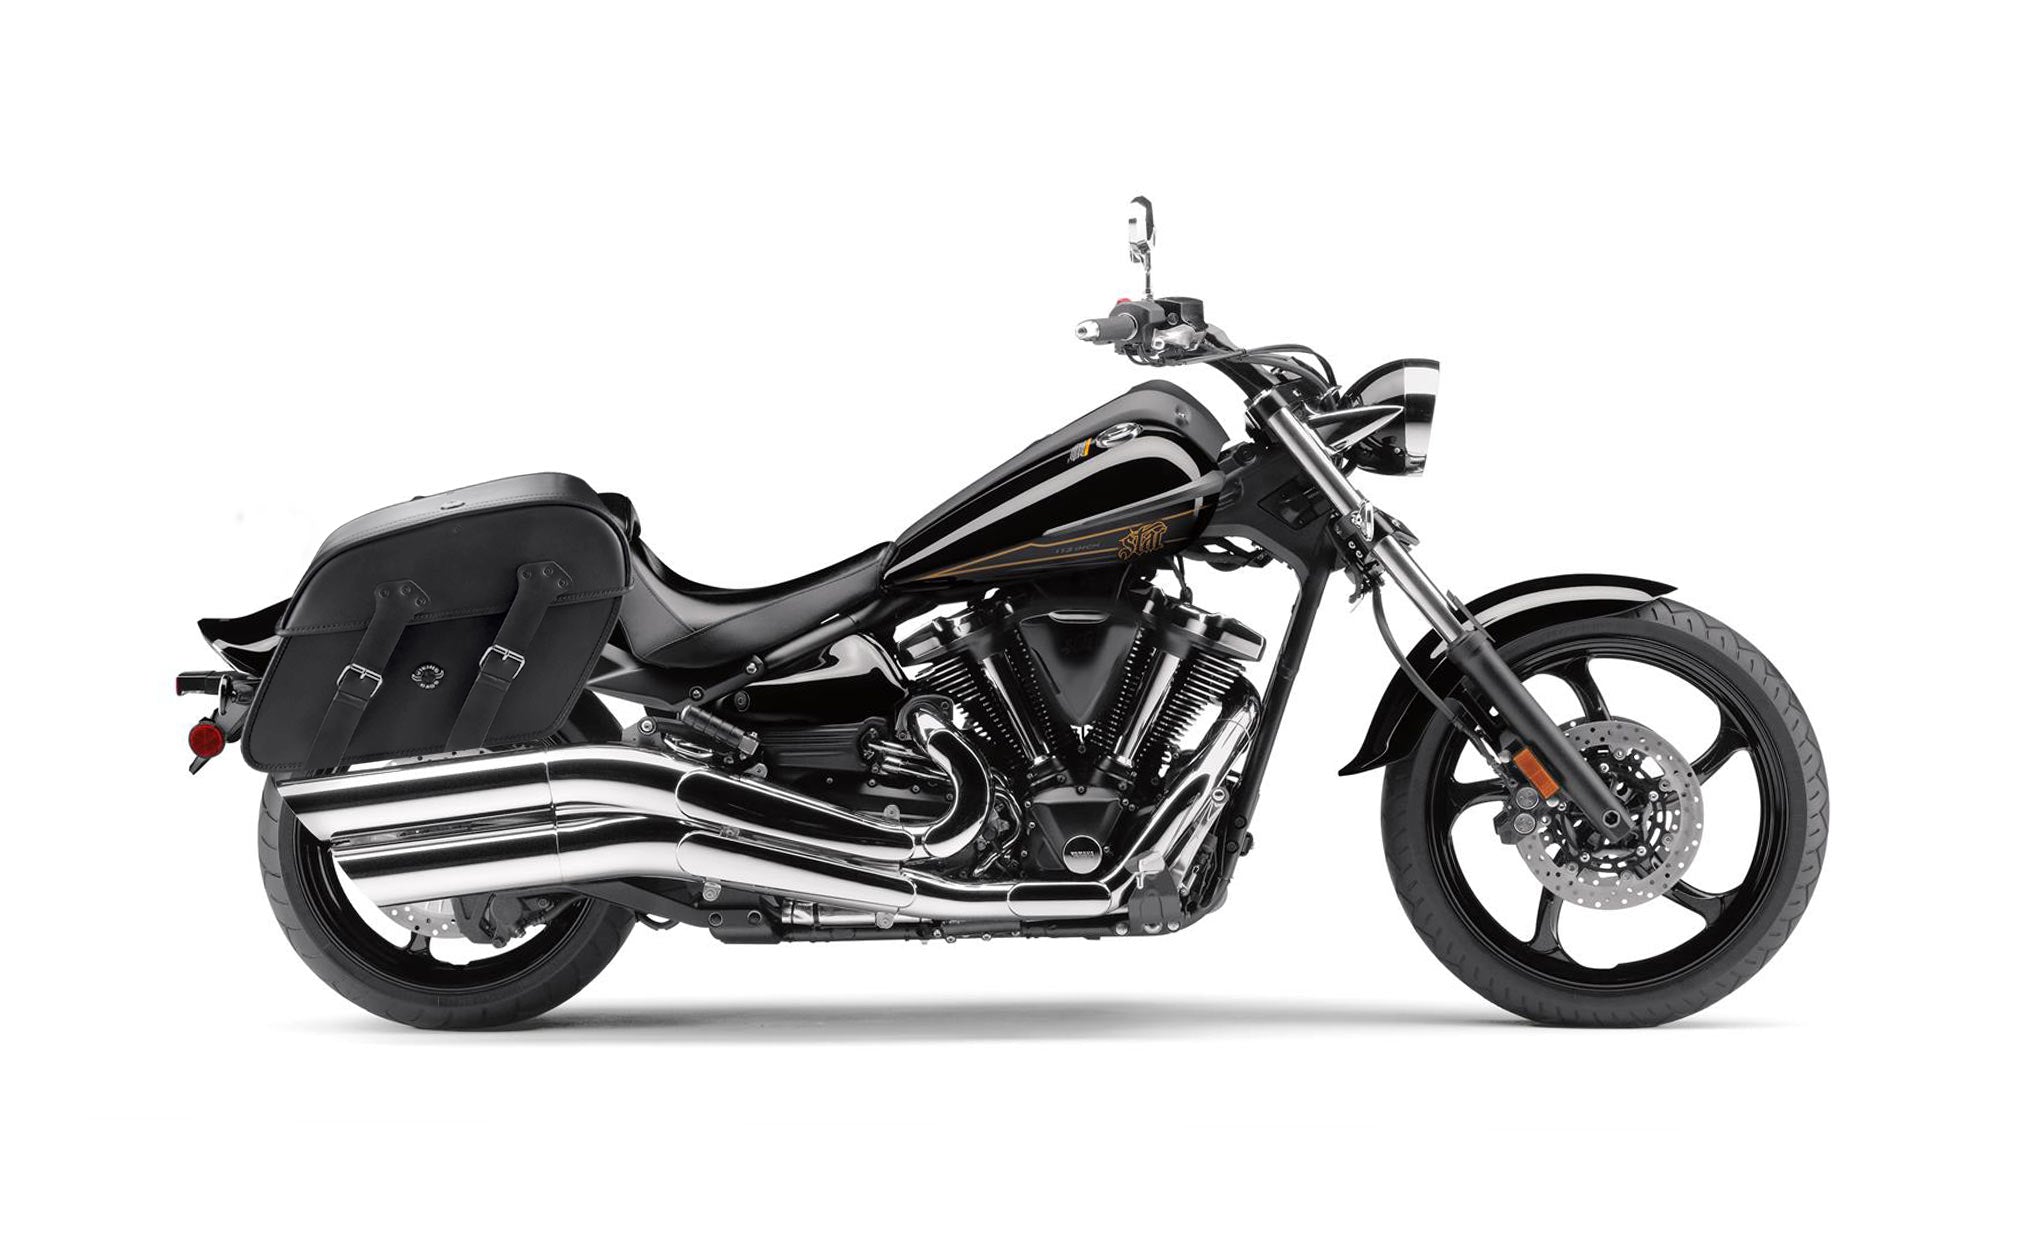 Viking Raven Extra Large Yamaha Raider Leather Motorcycle Saddlebags on Bike Photo @expand